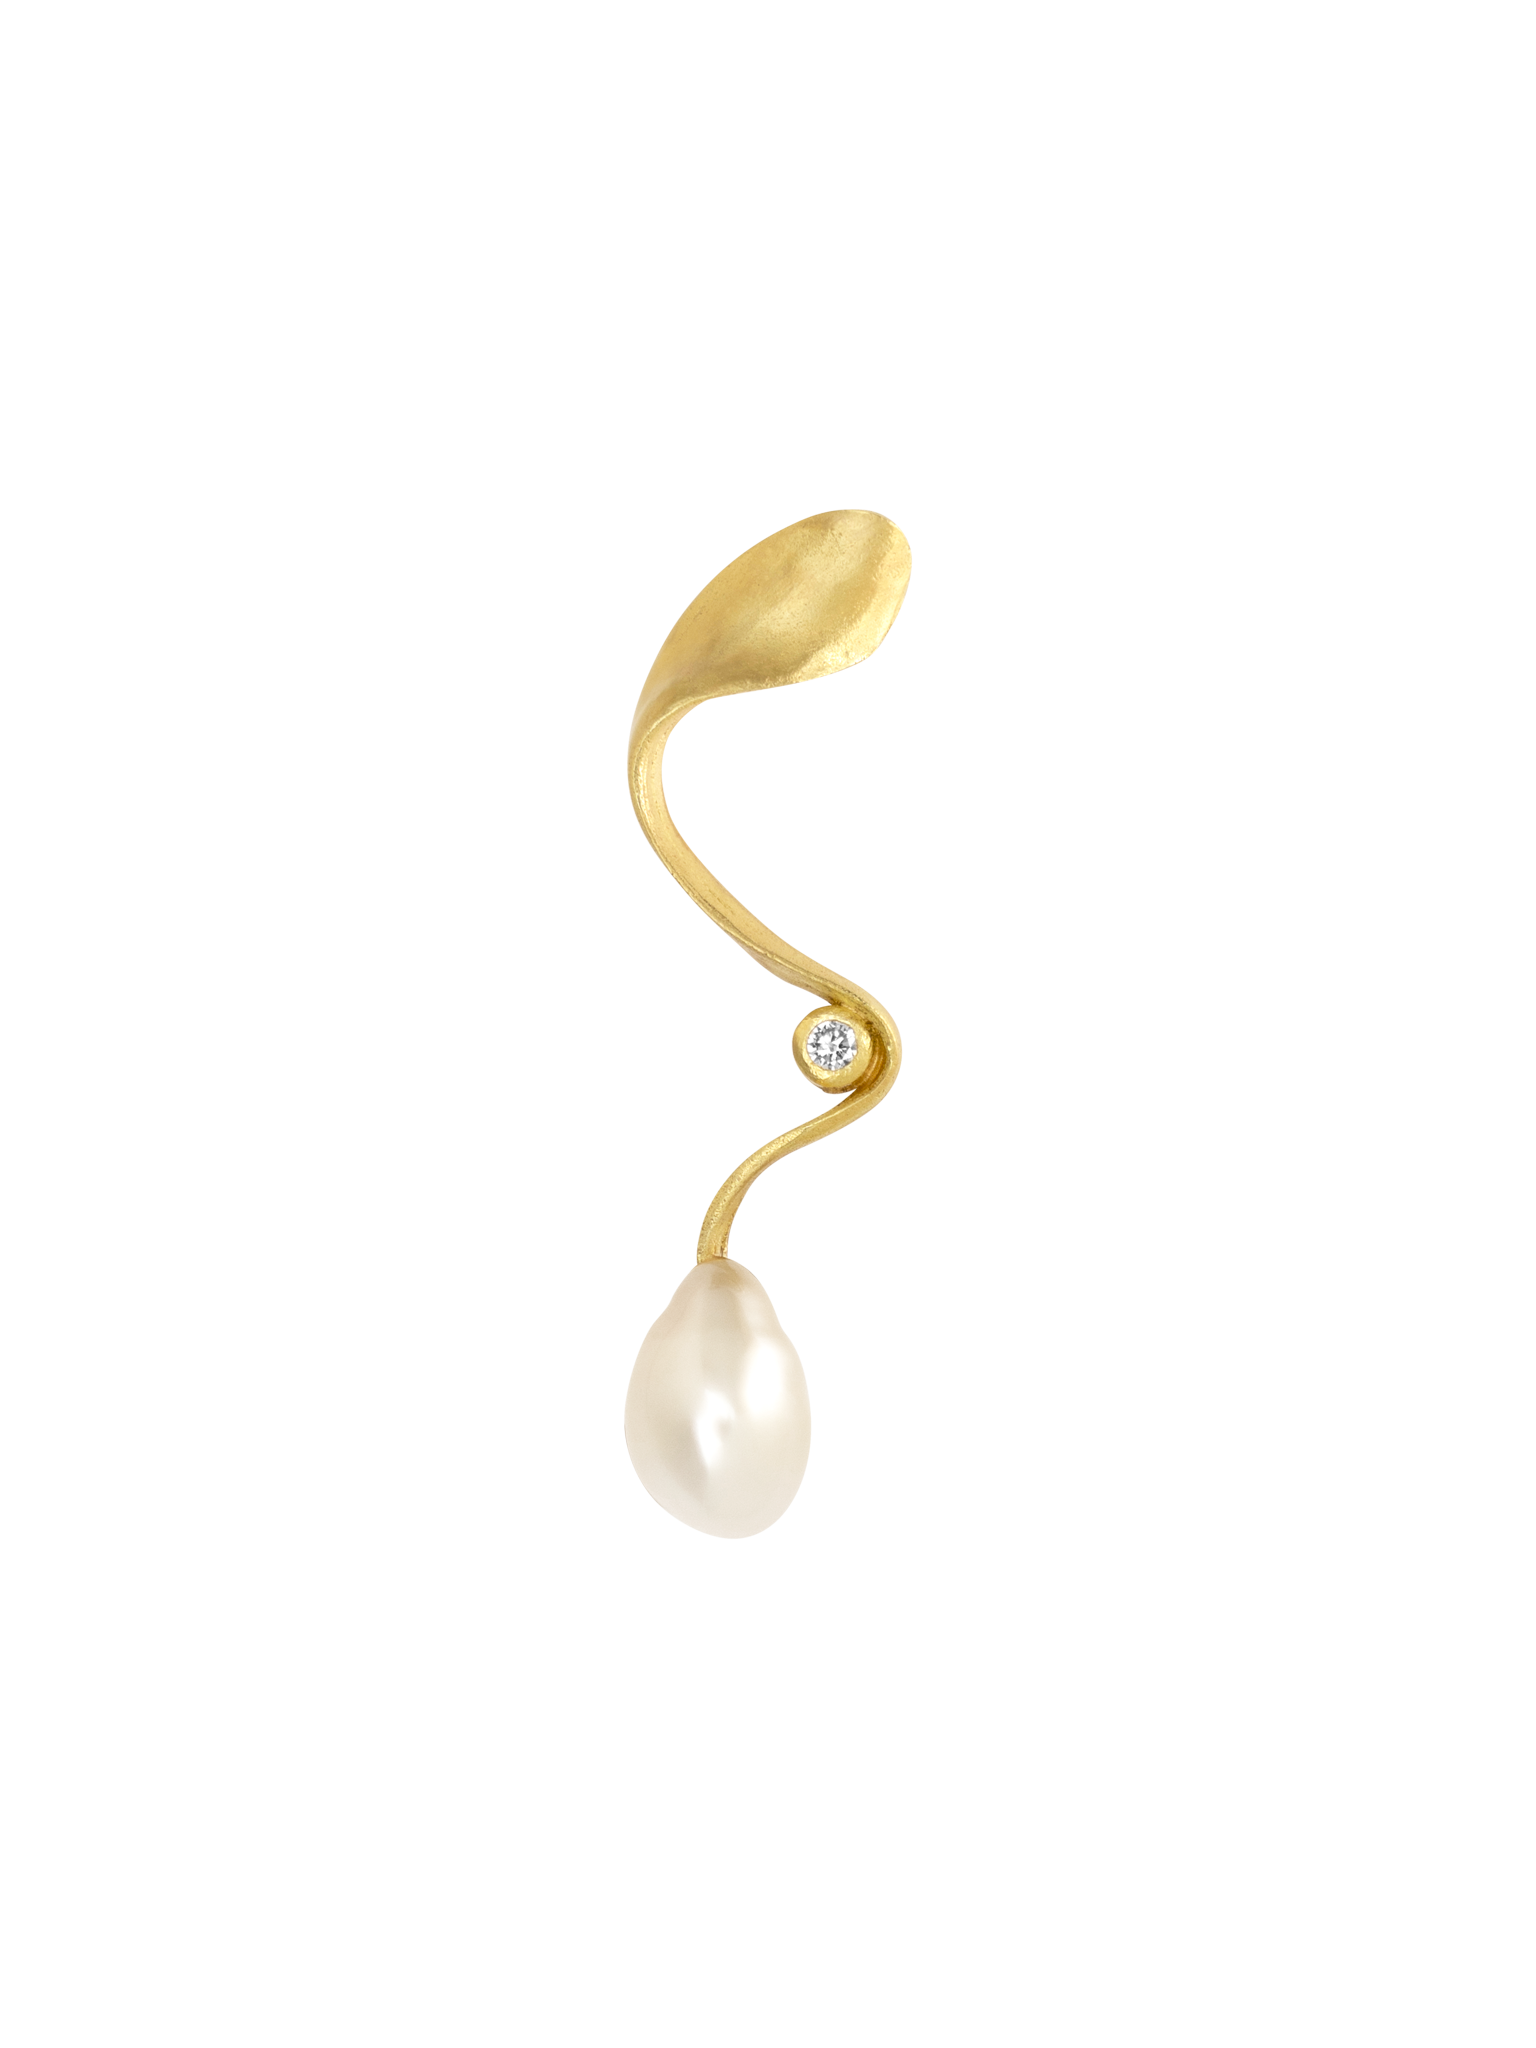 Pure keshi pearl earring